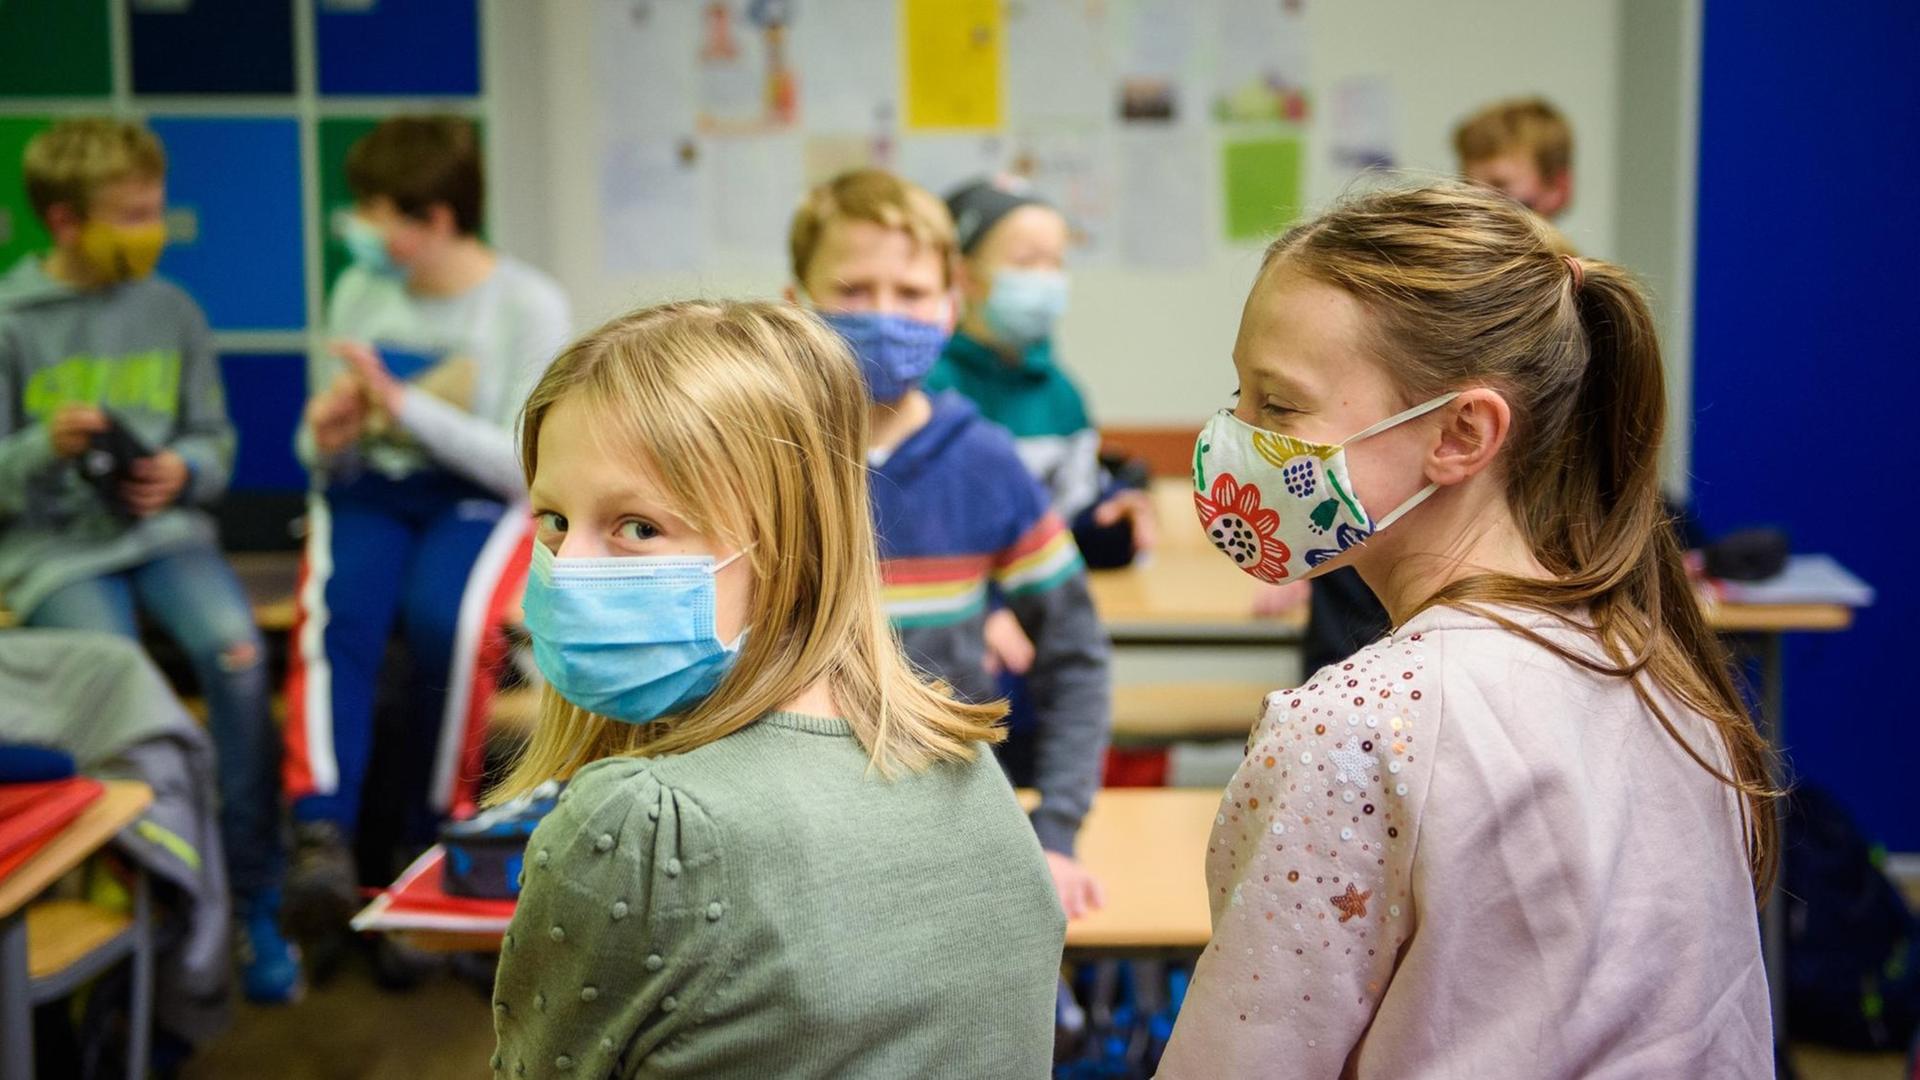 Schülerinnen und Schüler sitzen in einem Klassenzimmer und tragen dabei einen Mund-Nasen-Schutz.